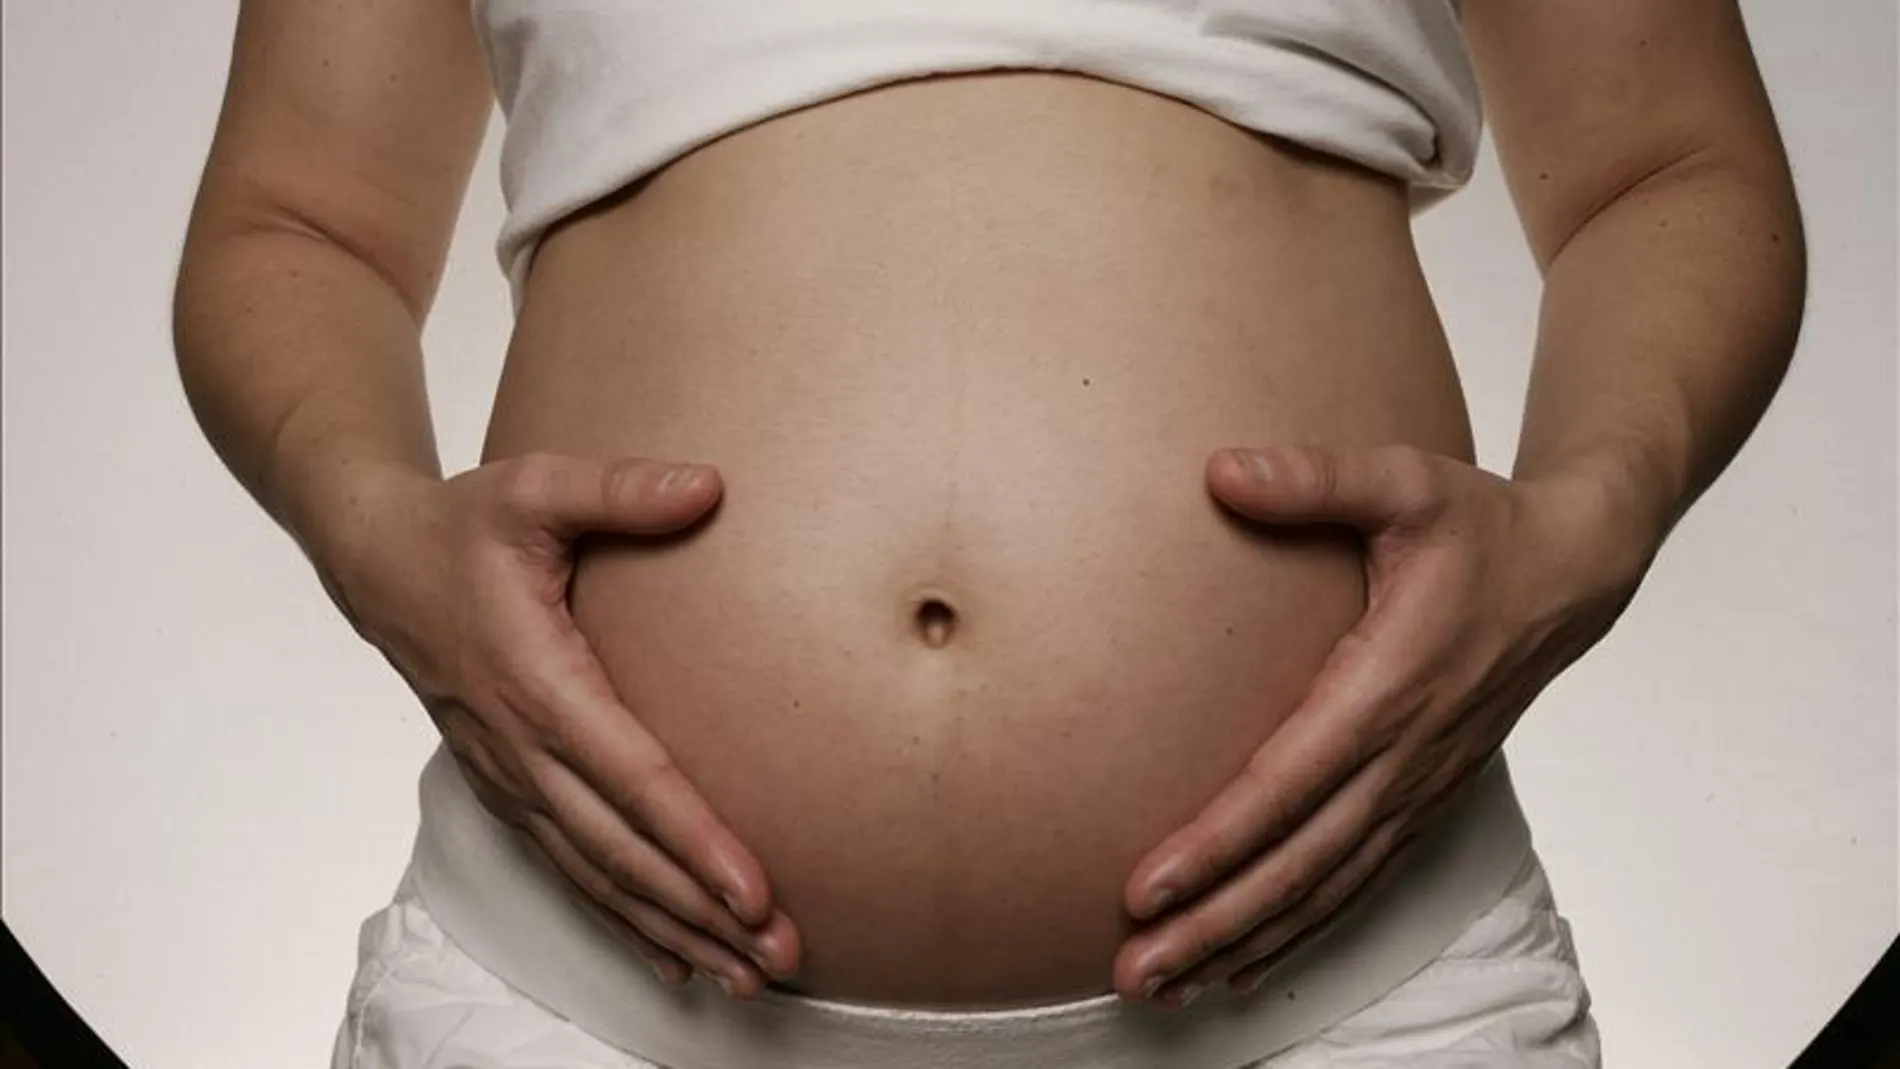 Los diputados británicos deciden sobre la reproducción asistida con ADN de tres personas